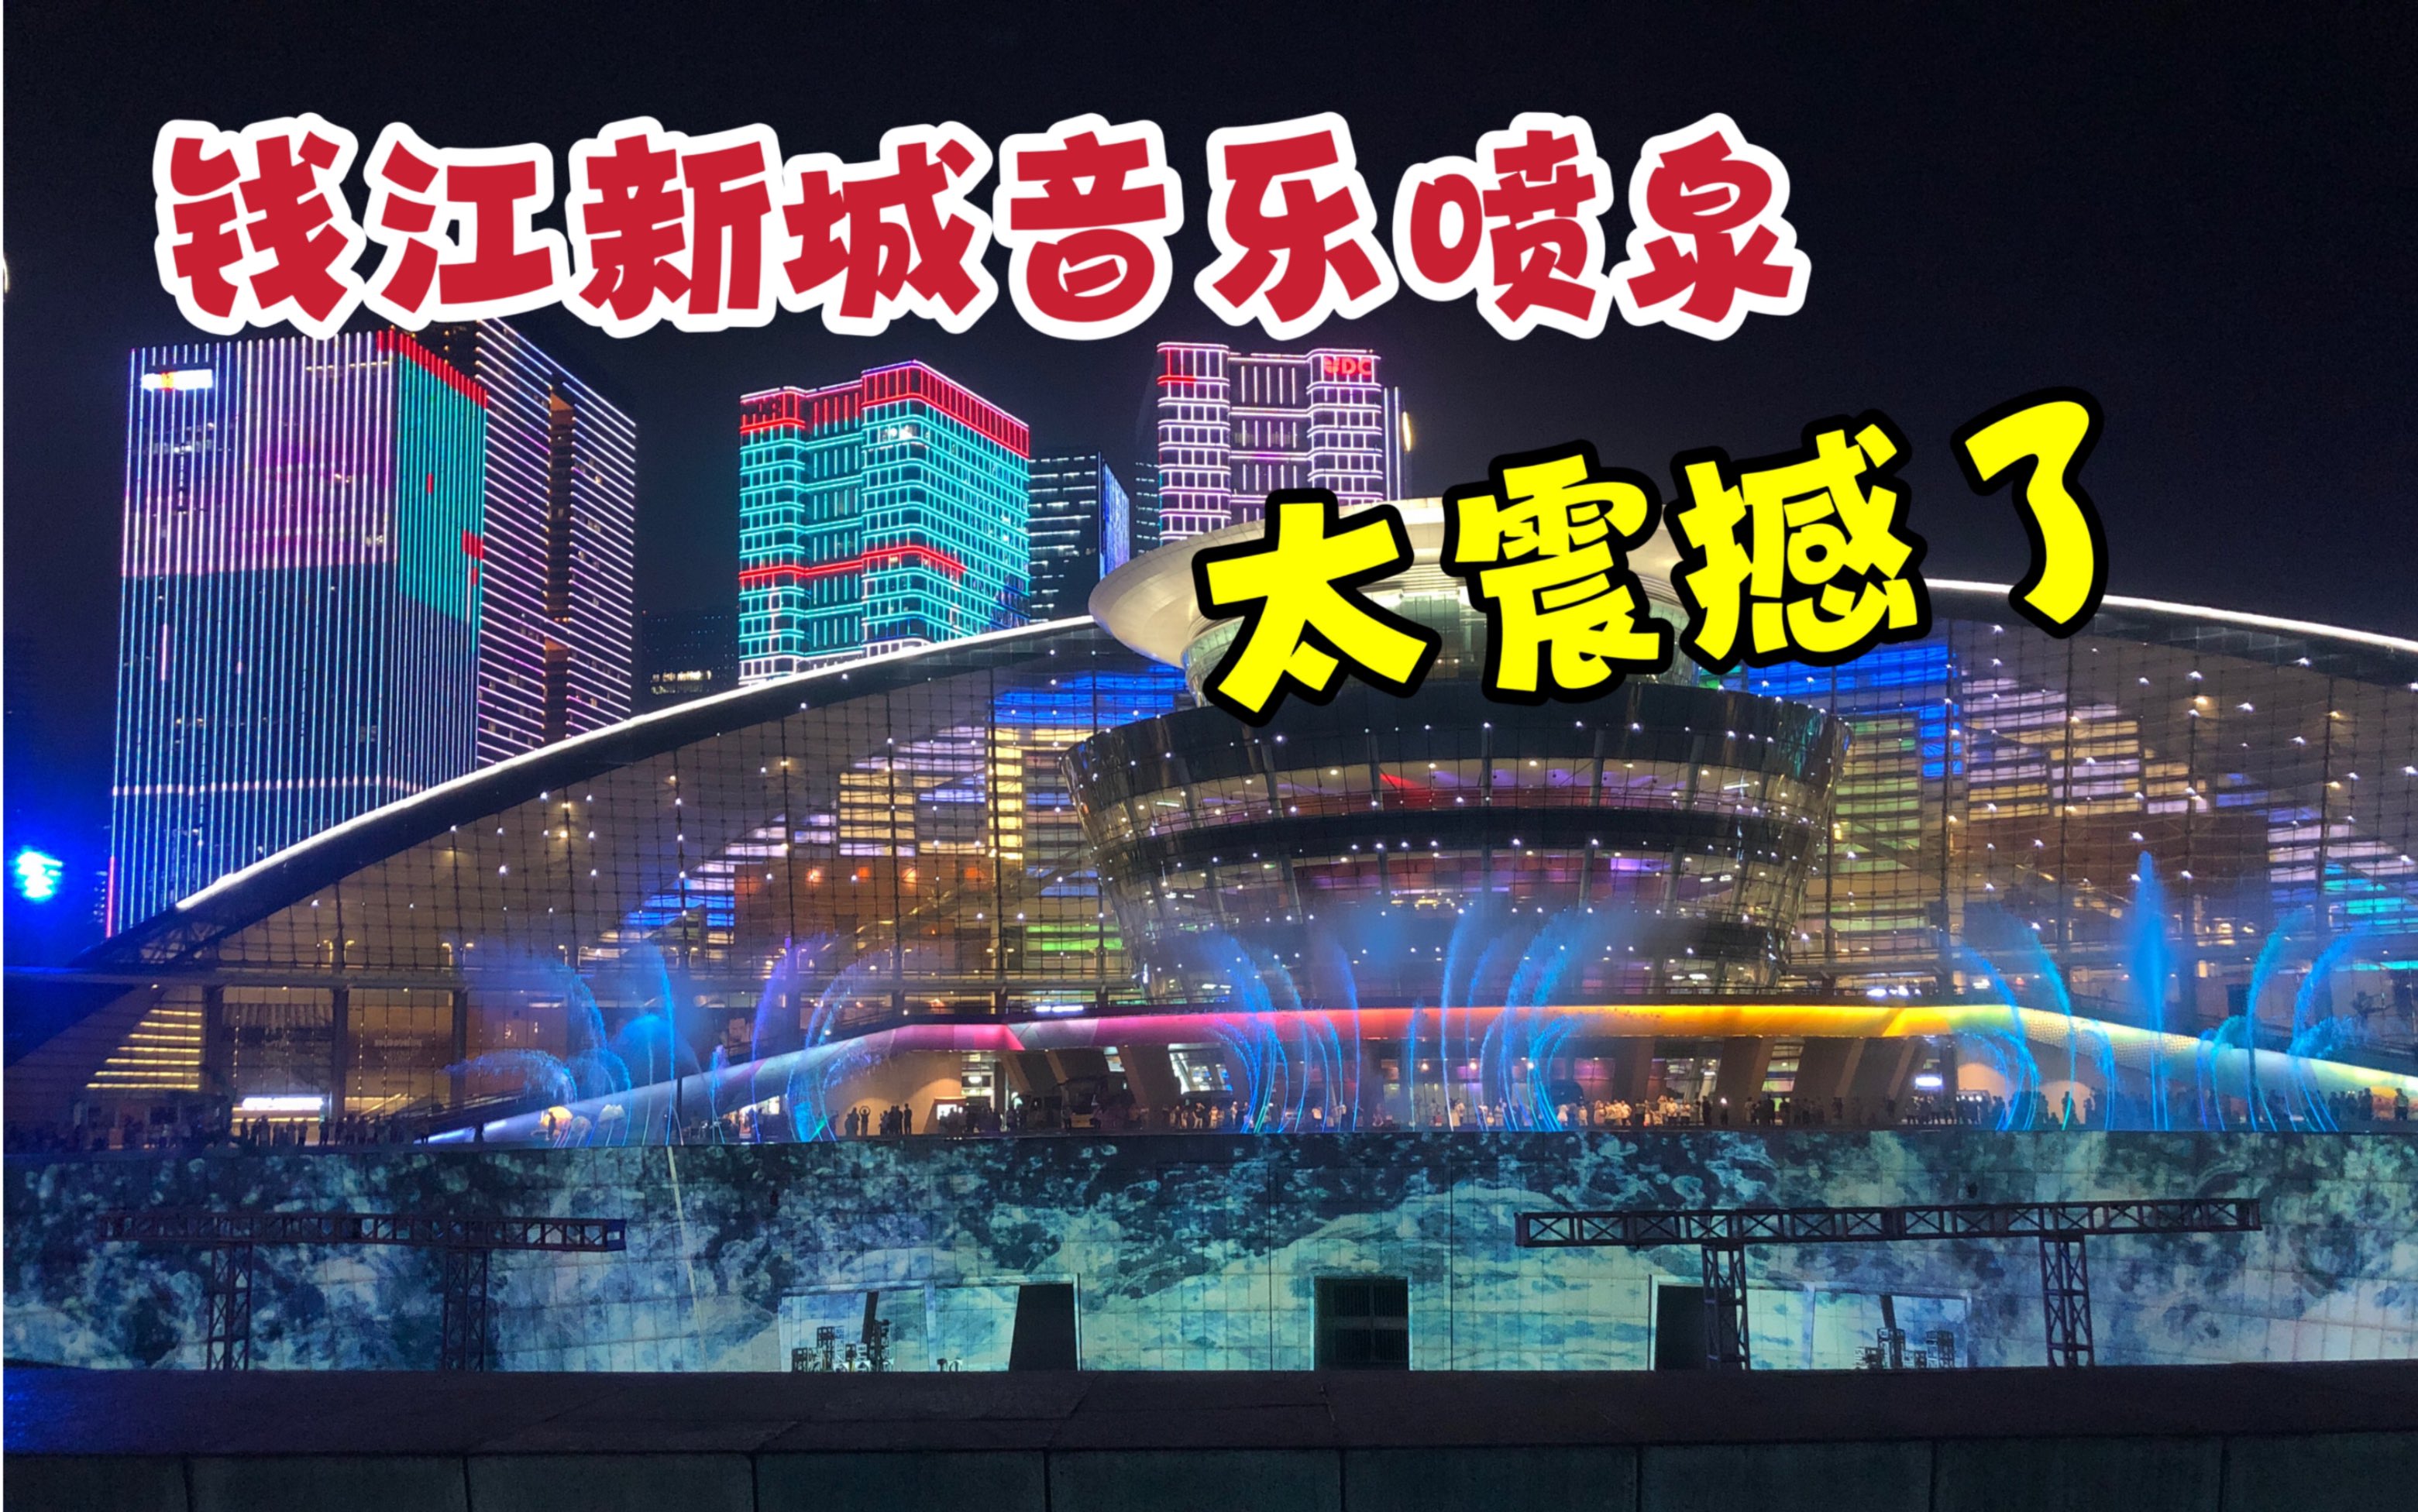 杭州钱江新城的音乐喷泉太好看了吧，结合灯光秀很震撼，不容错过